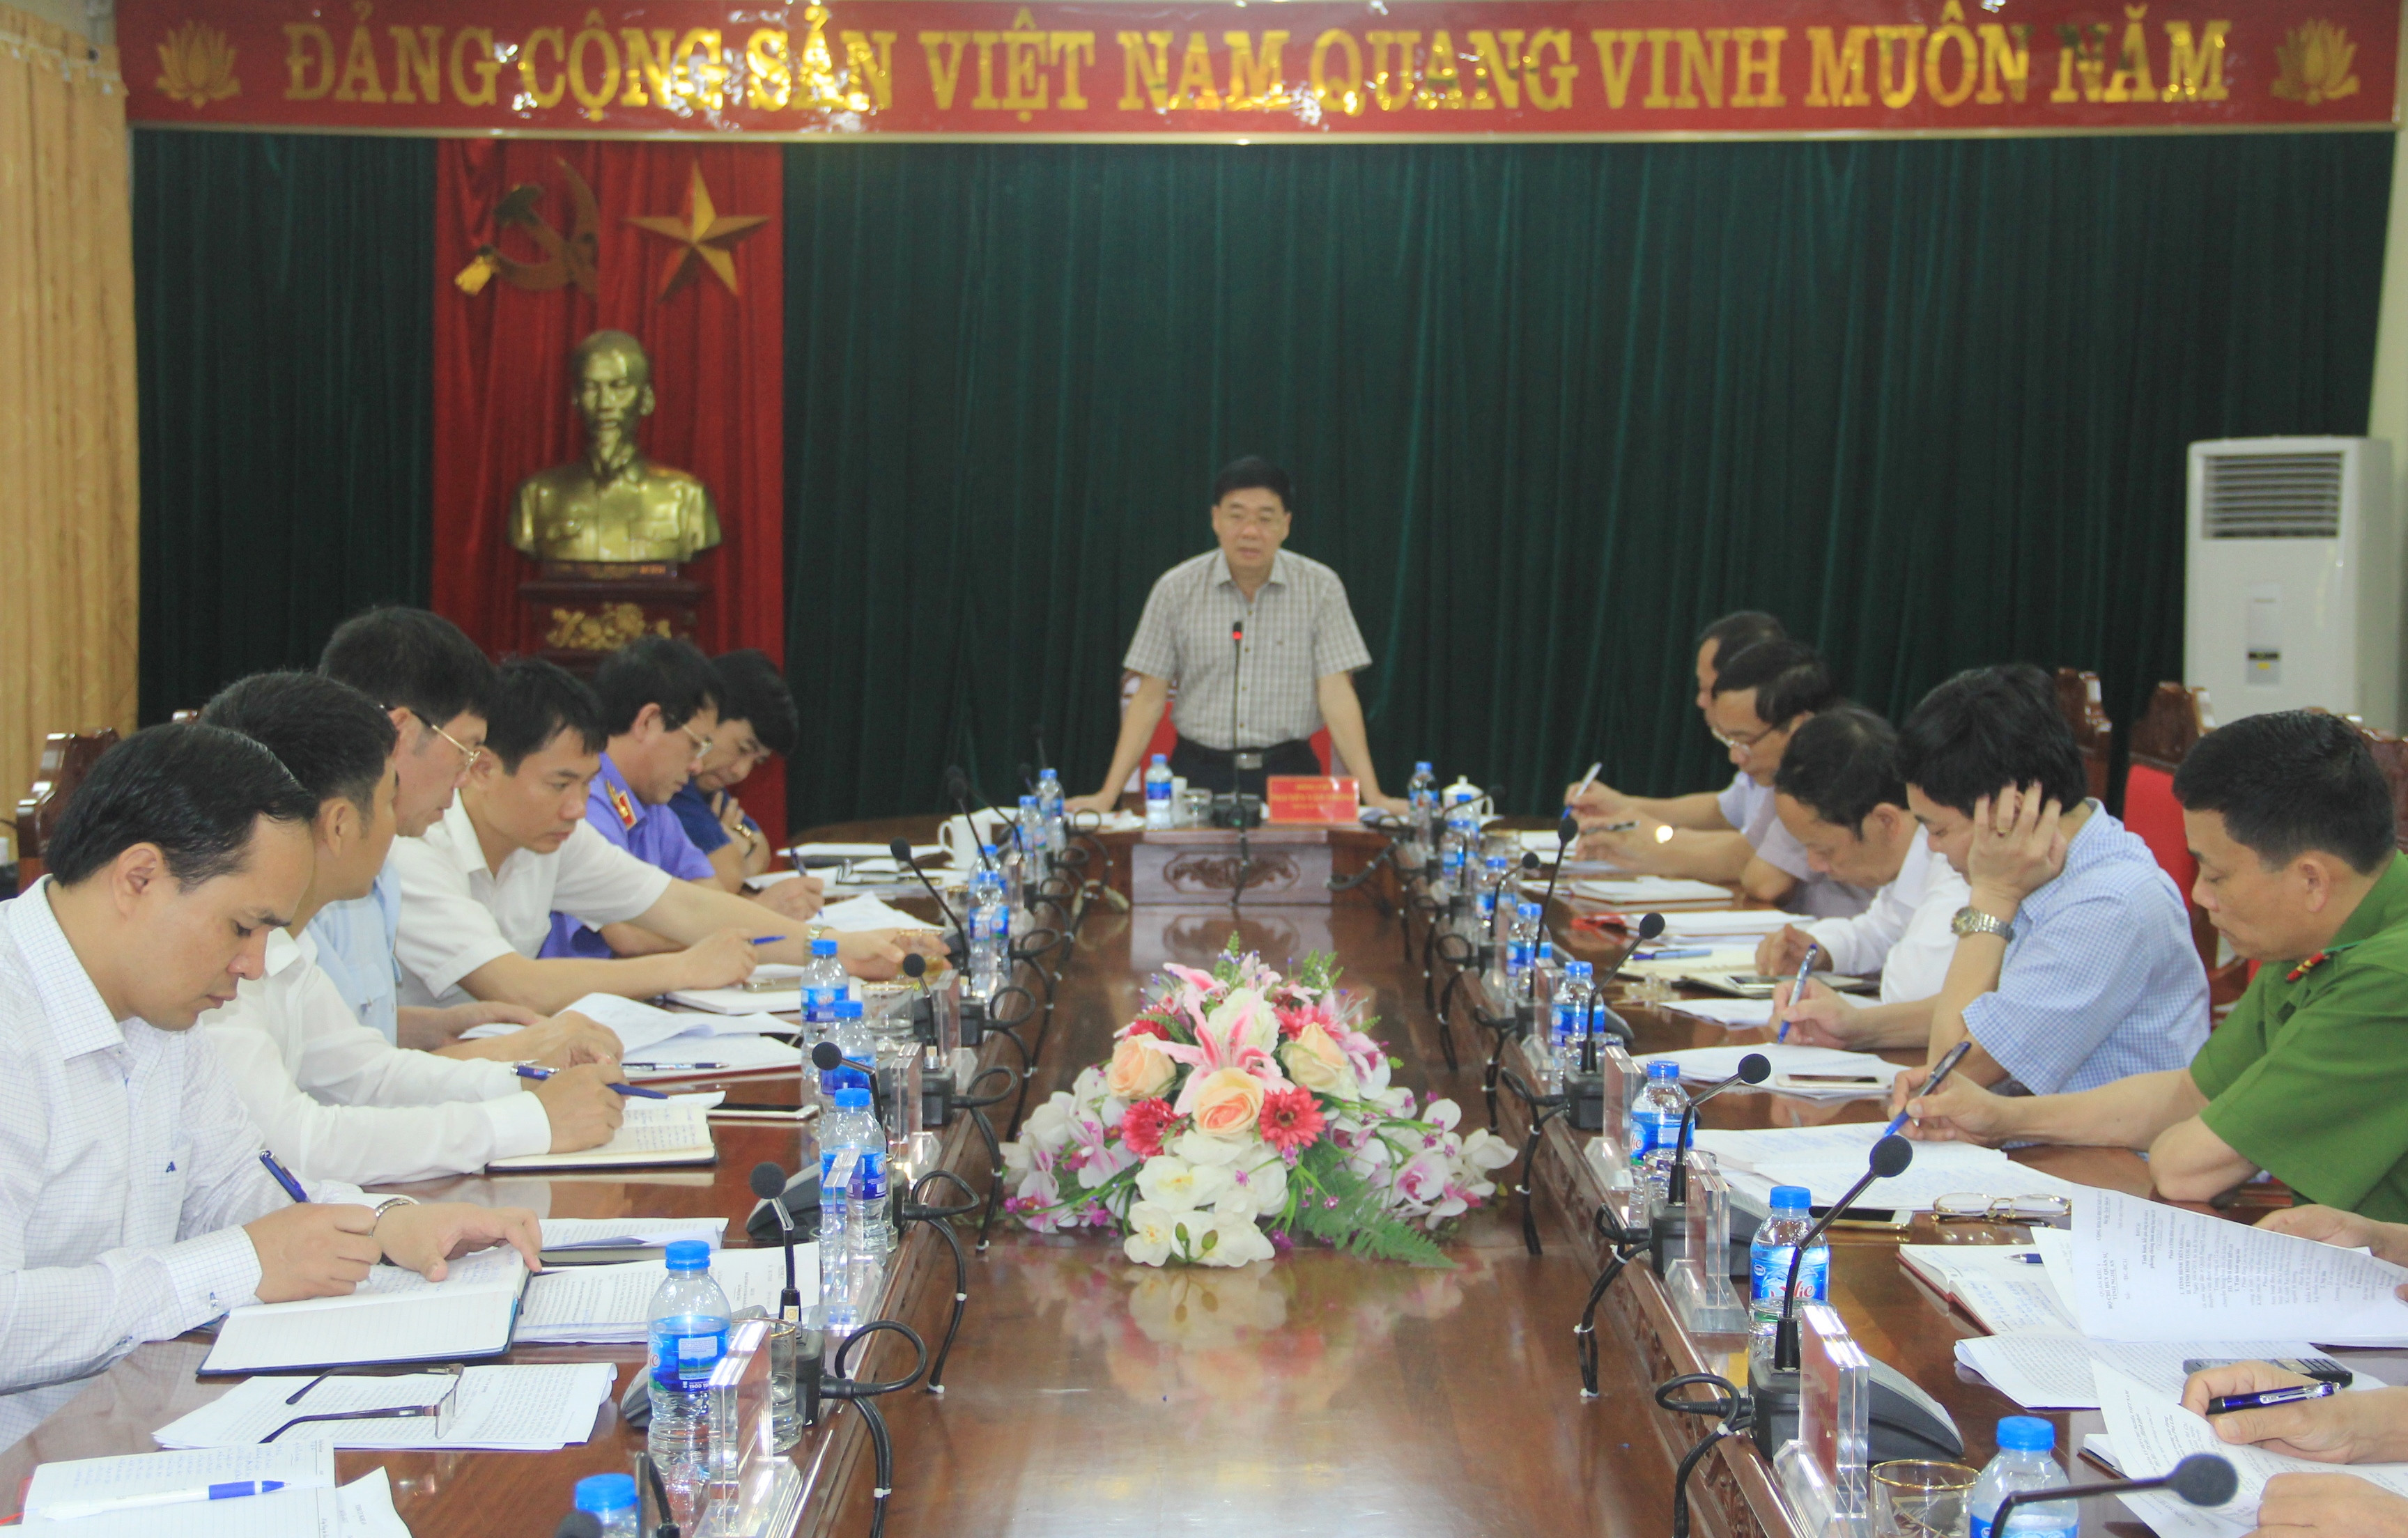 Đồng chí Nguyễn Văn Thông - Phó Bí thư Tỉnh ủy chủ trì hội nghị. Ảnh: P.B